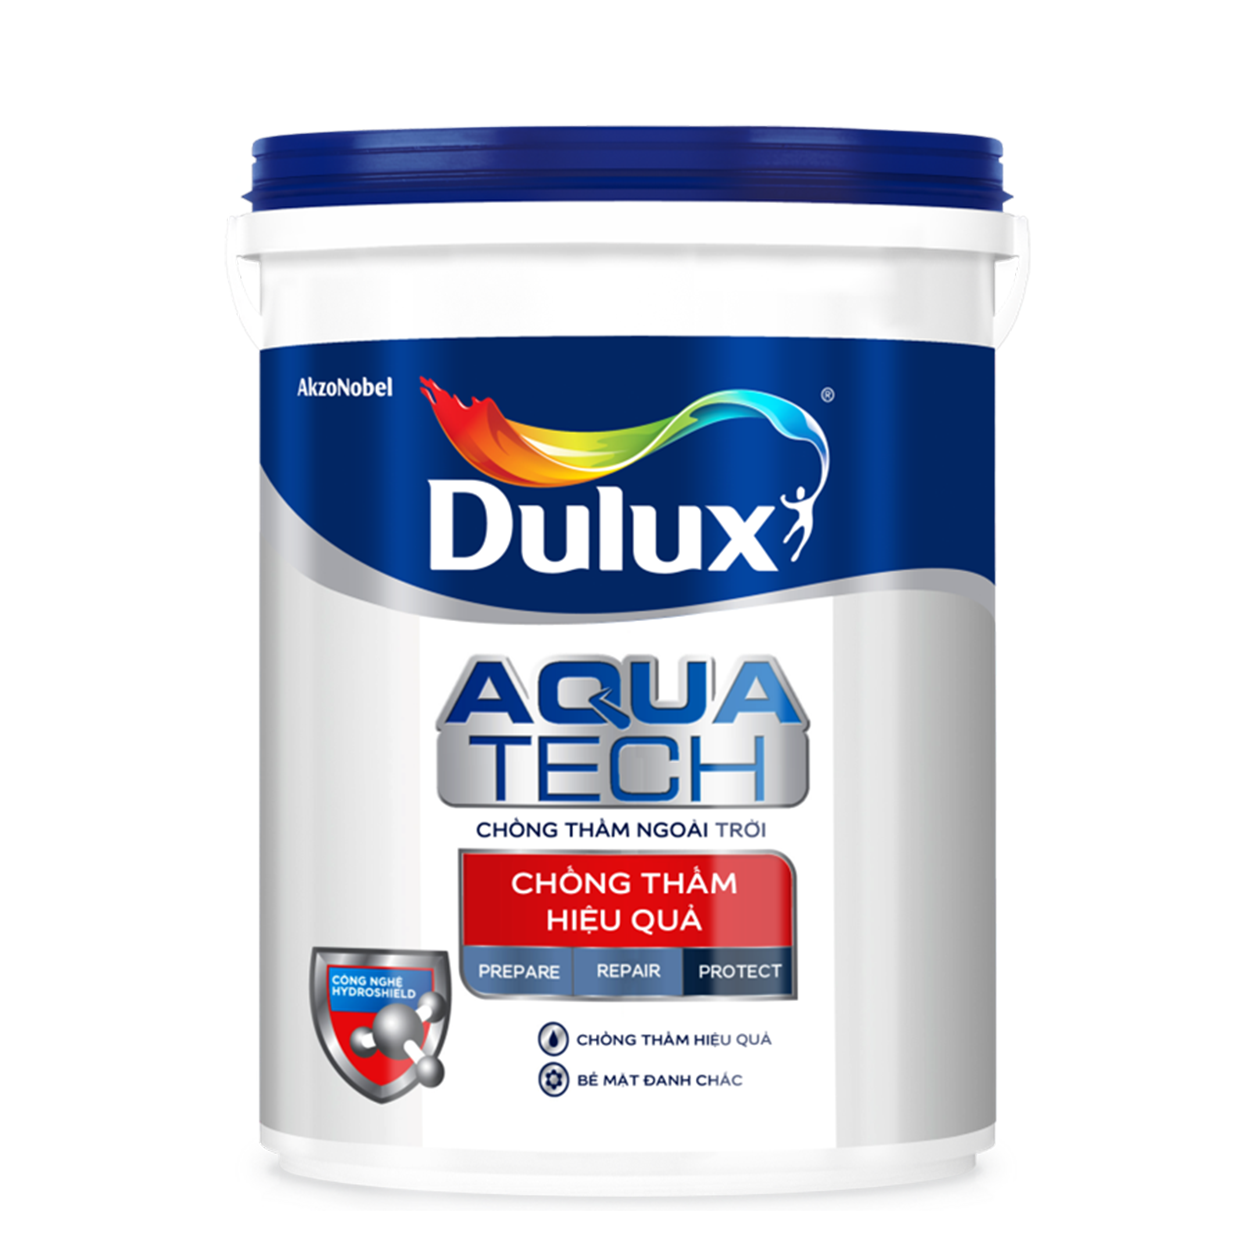 Chất Chống Thấm Dulux Aquatech C8033: Chất Chống Thấm Dulux Aquatech C8033 là lựa chọn hoàn hảo để bảo vệ công trình xây dựng của bạn khỏi hiện tượng thấm nước và ẩm mốc. Hãy xem qua hình ảnh sản phẩm này và tin tưởng rằng nó sẽ không làm bạn thất vọng.